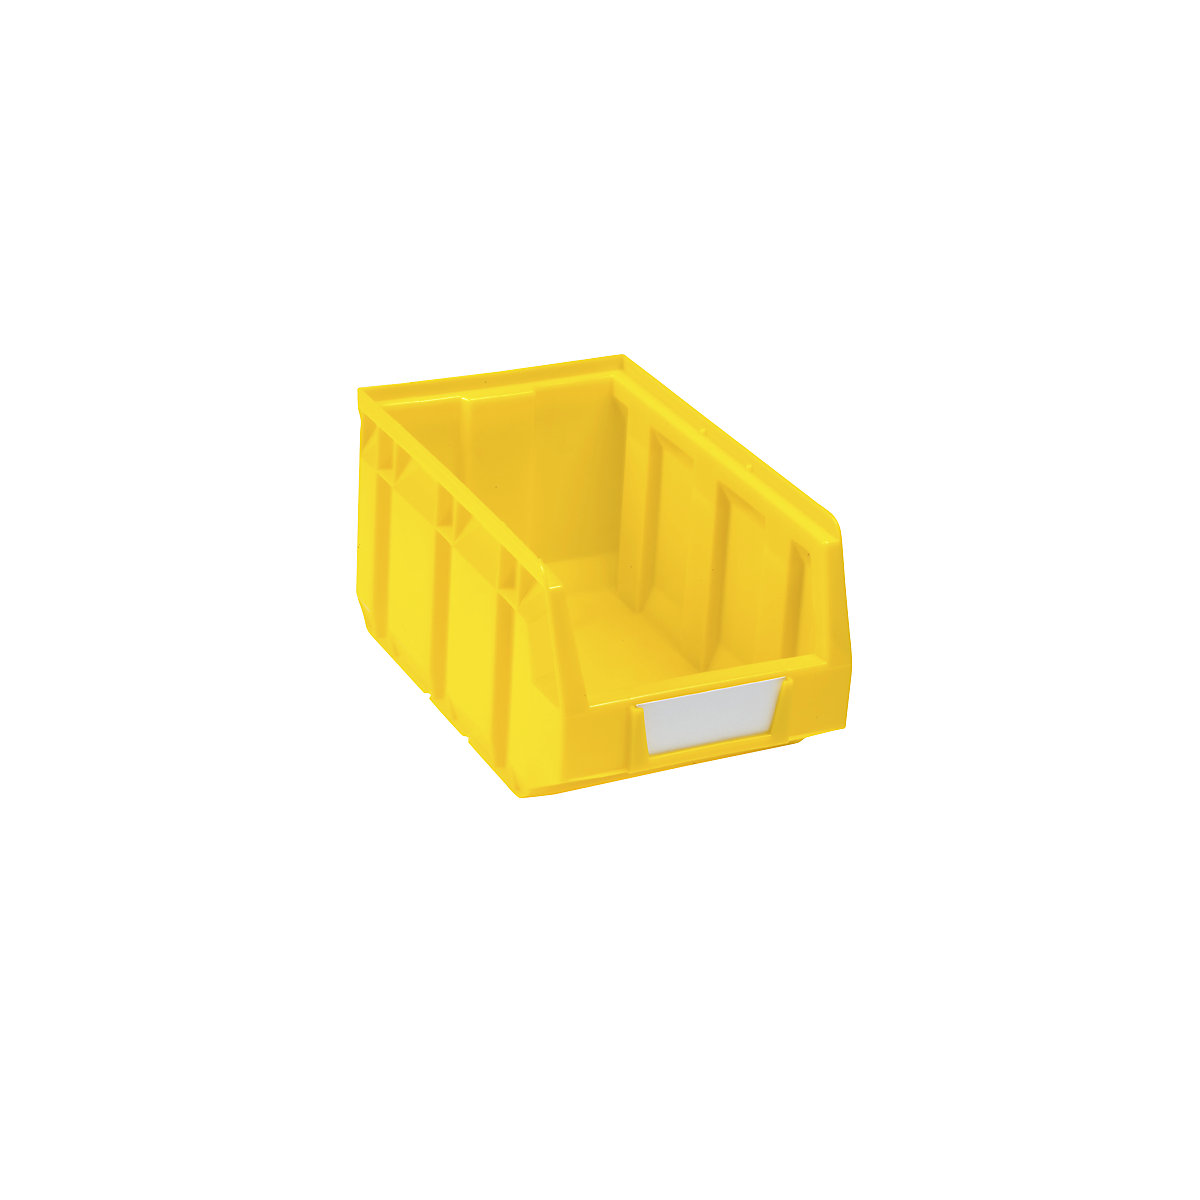 Prepravka s viditeľným obsahom z polyetylénu, d x š x v 237 x 144 x 123 mm, žltá, OJ 38 ks-11